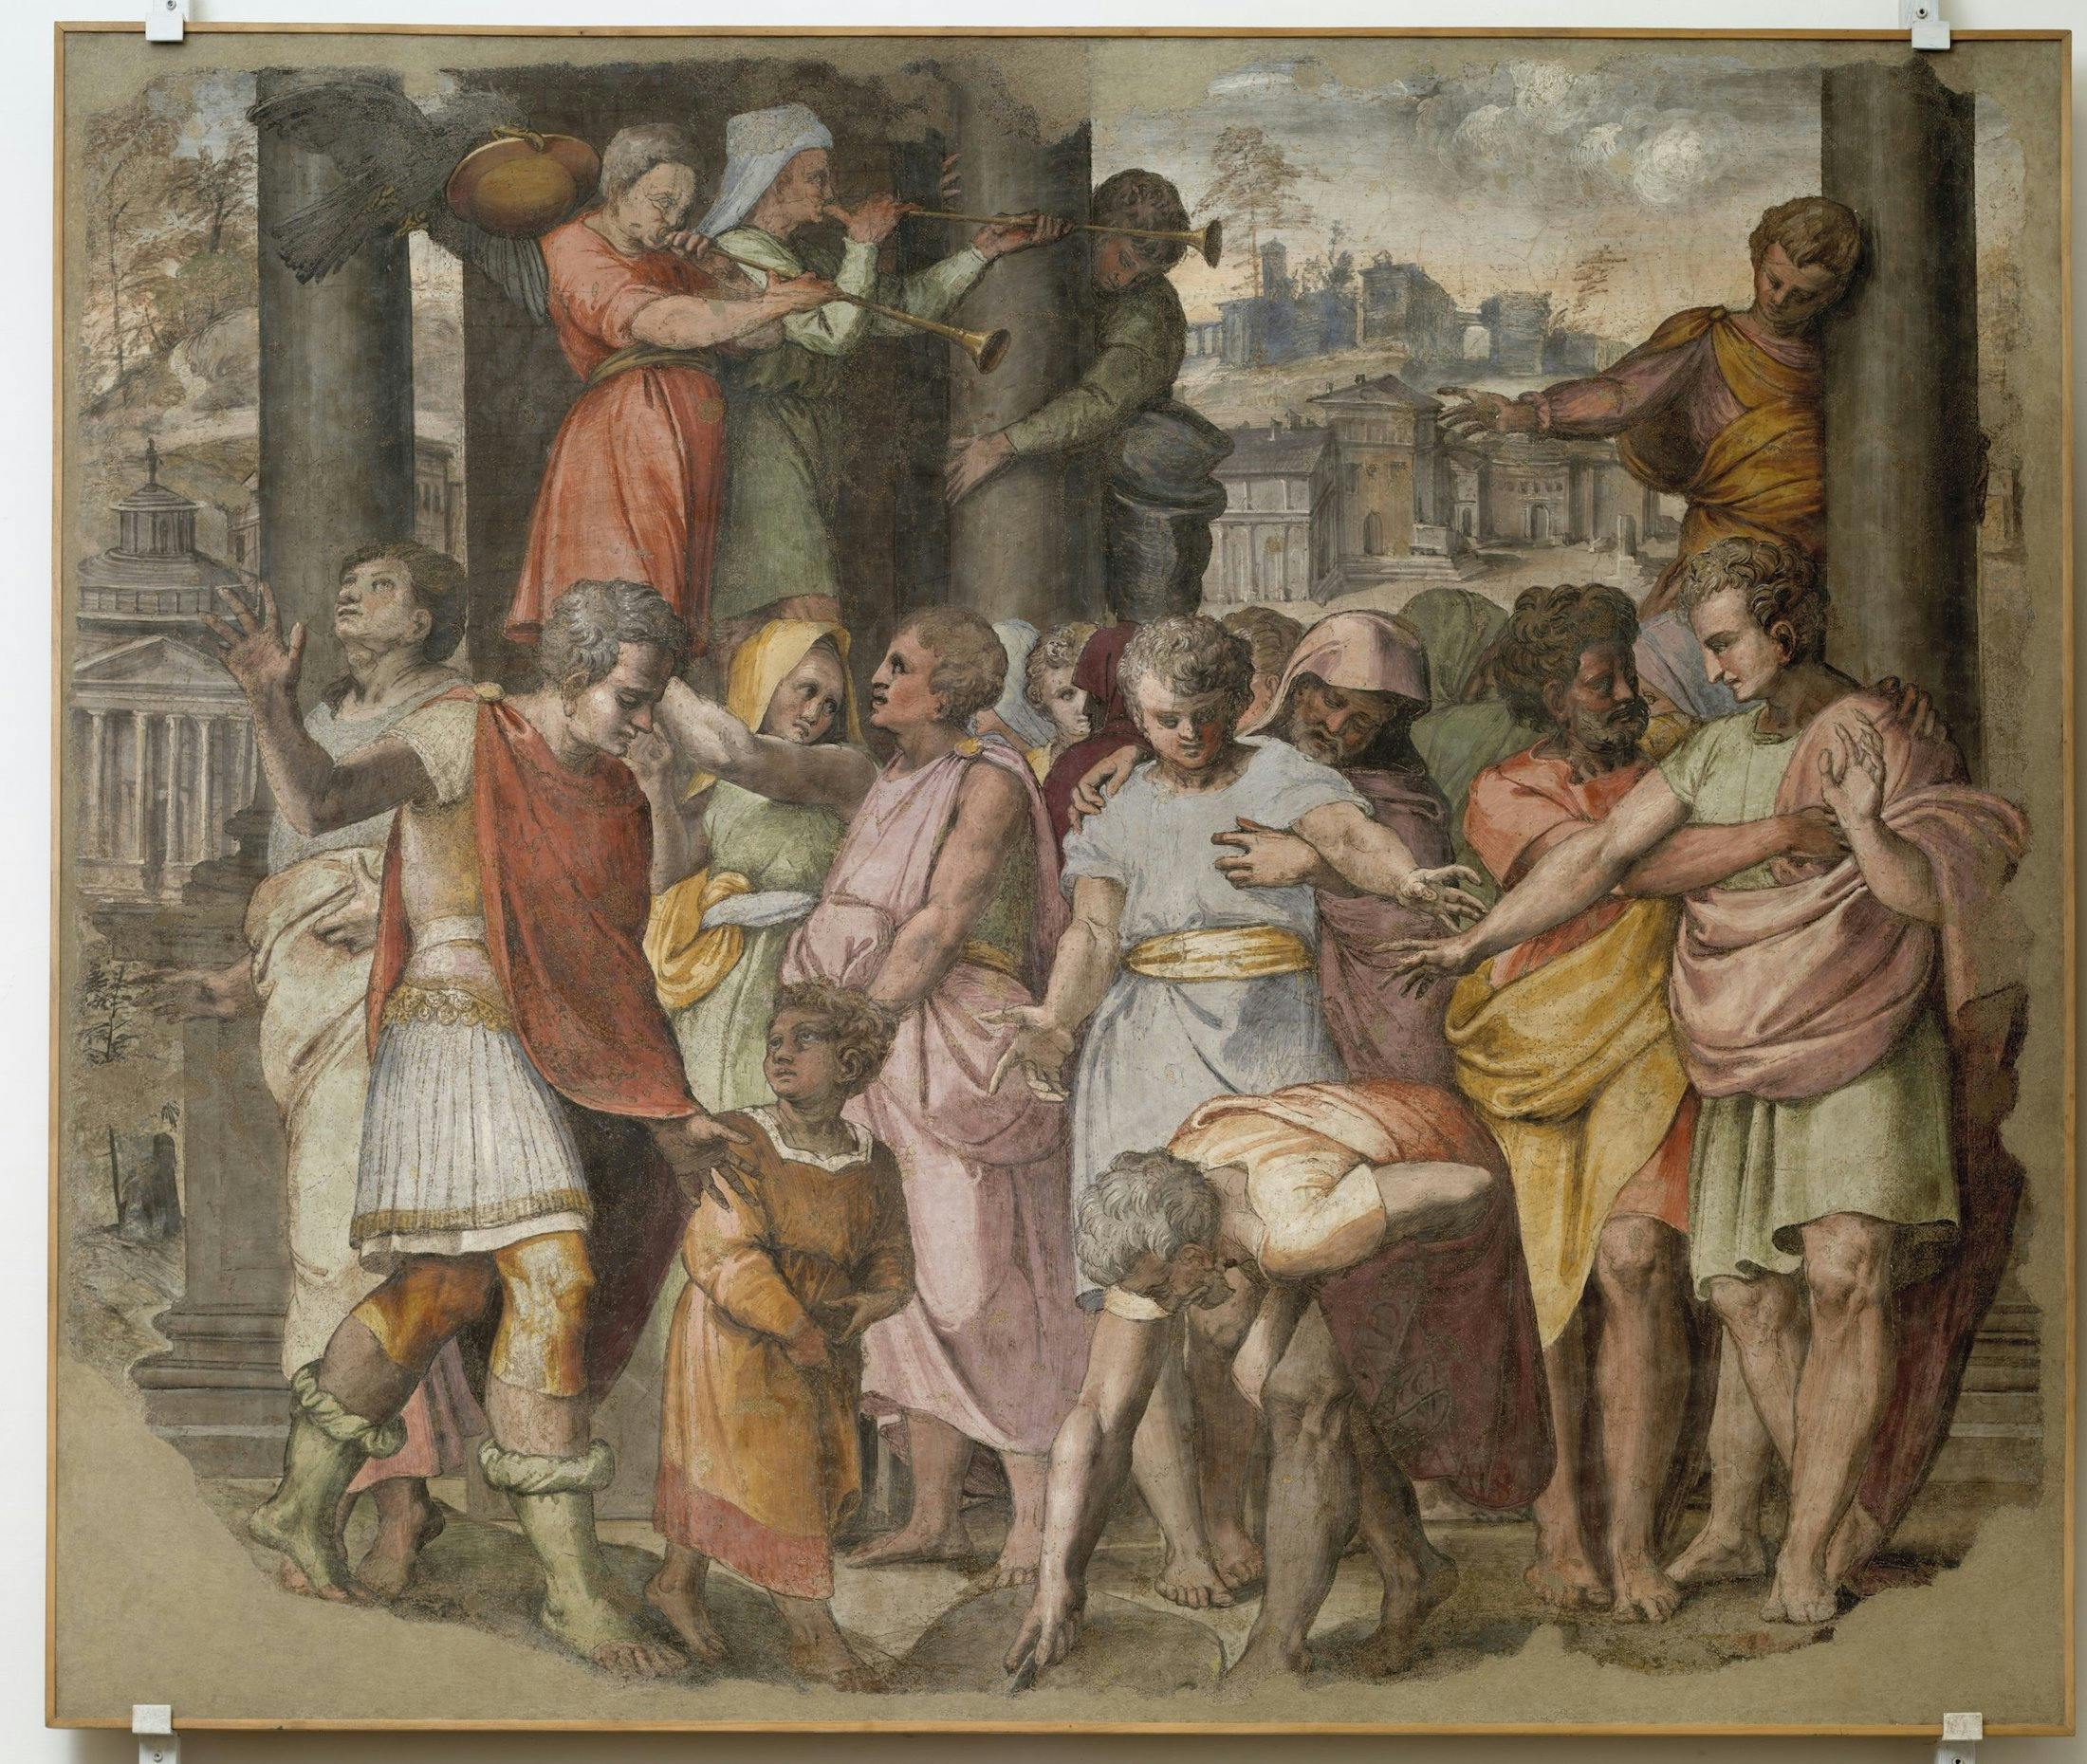 Tarquinius Priscus founds the Temple of Jupiter on the Campidoglio